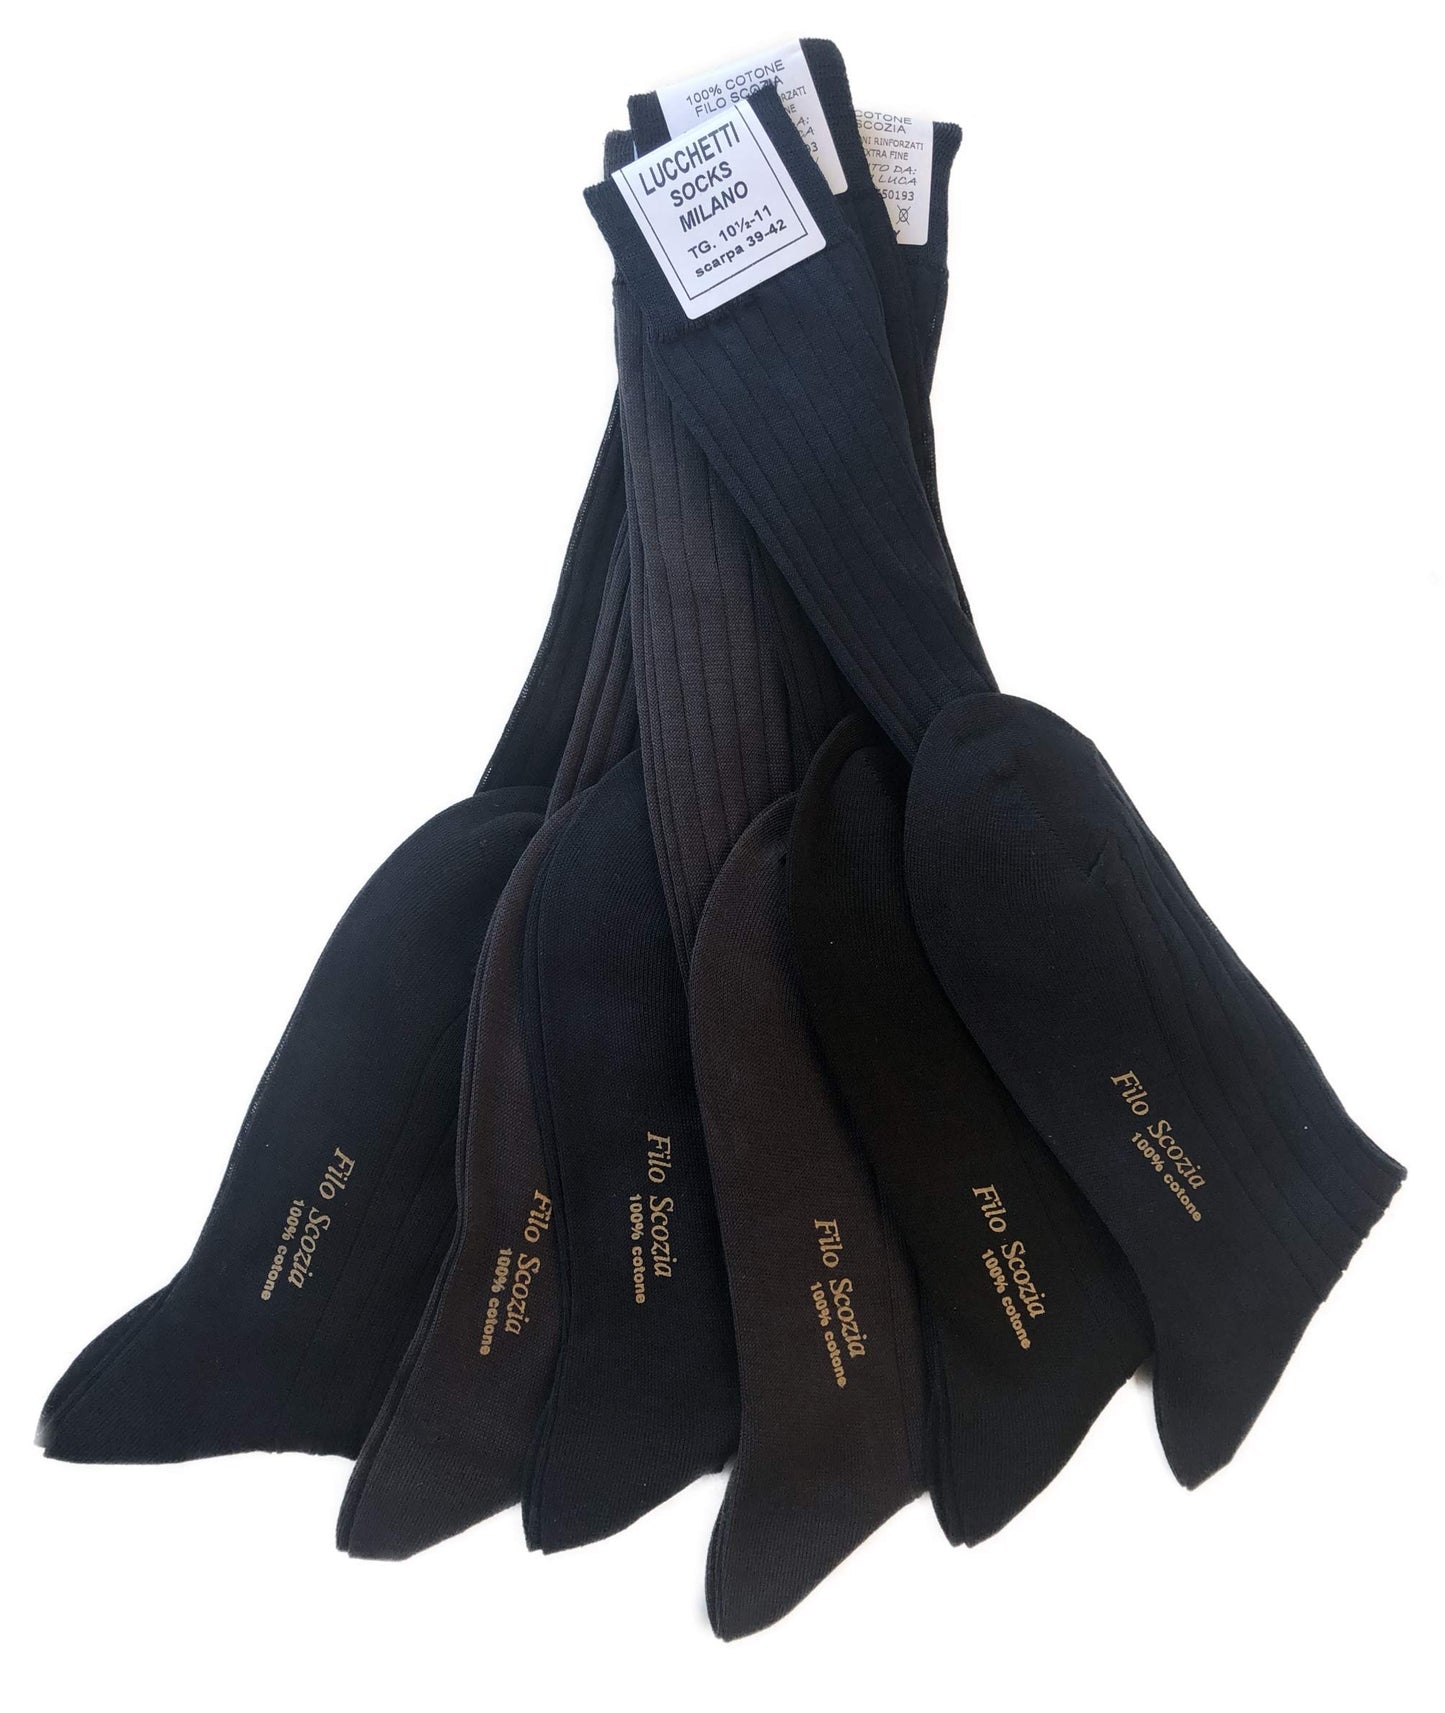 Lucchetti Socks Milano 6 PAIA calze da uomo lunghe filo di scozia 100% cotone rimagliate Made in Italy